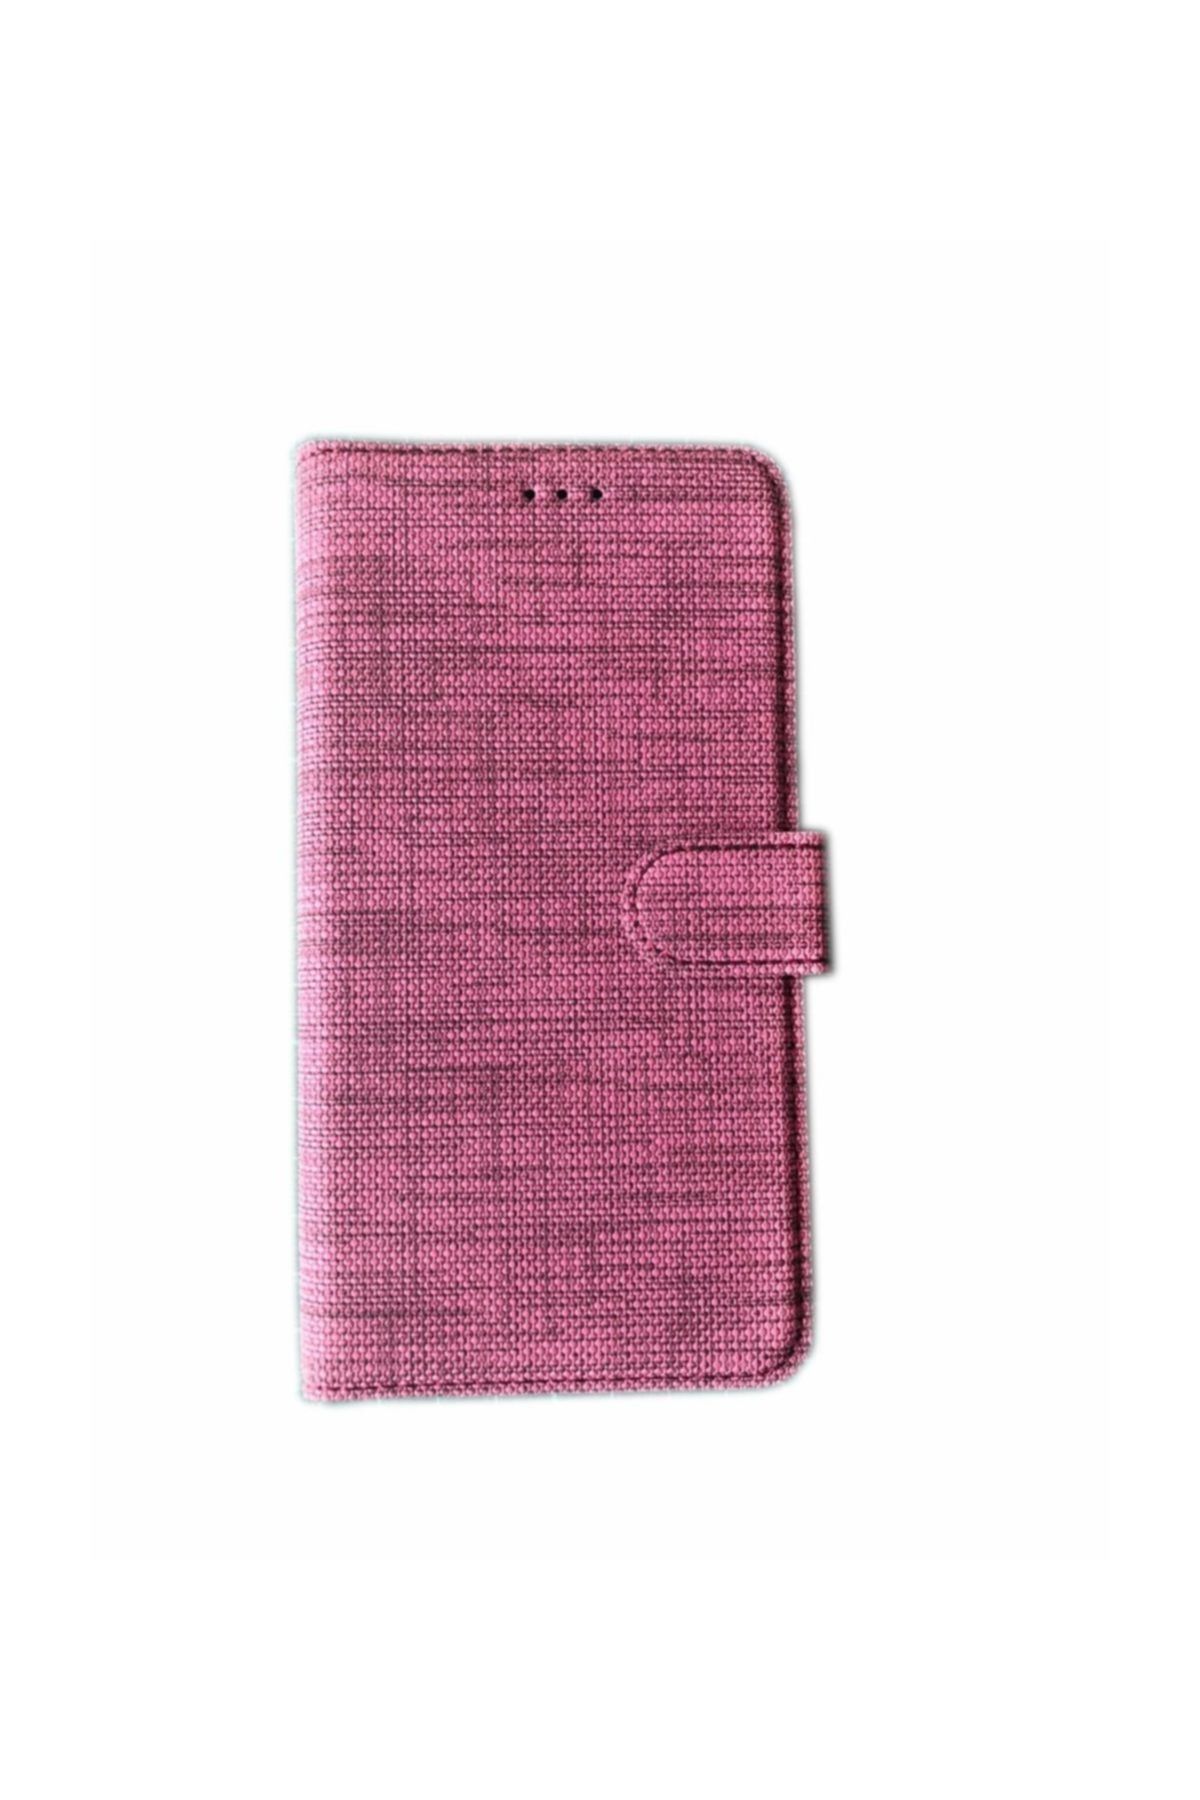 KNY Apple Iphone 7 Kılıf Kumaş Desenli Cüzdanlı Kapaklı Kartlıklı Kılıf